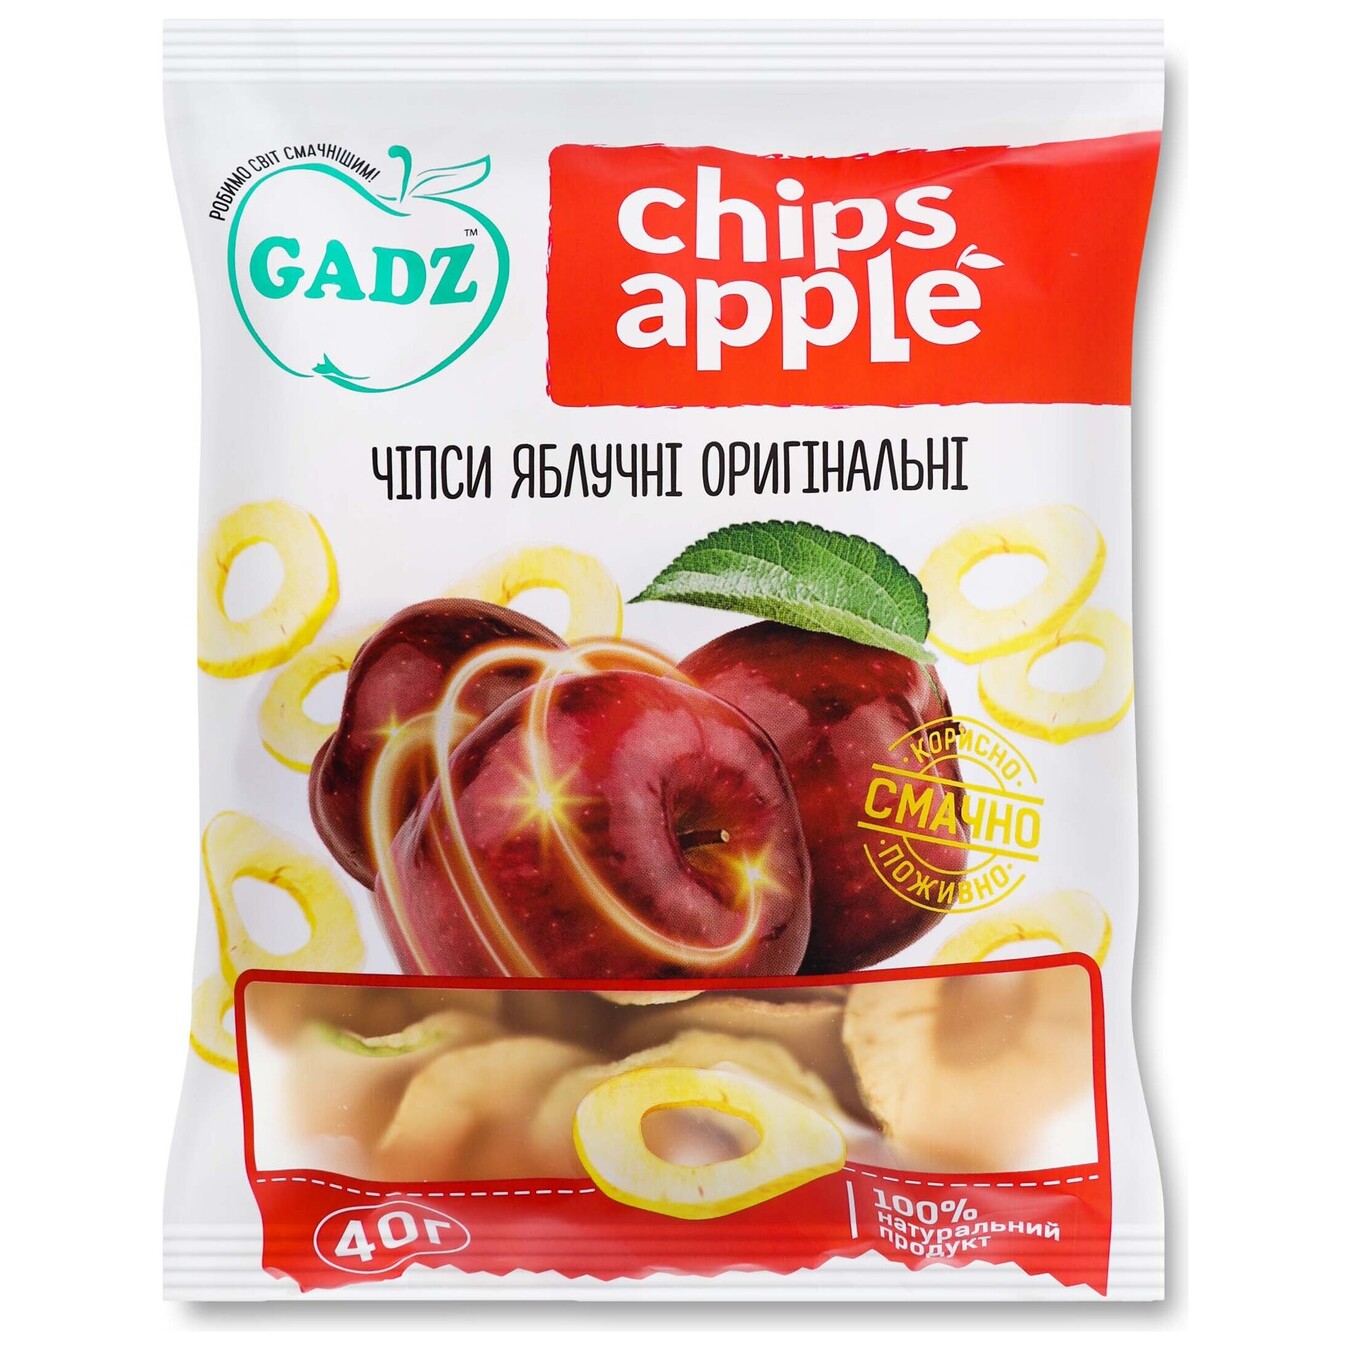 Чипсы GADZ яблочные оригинальные 40г